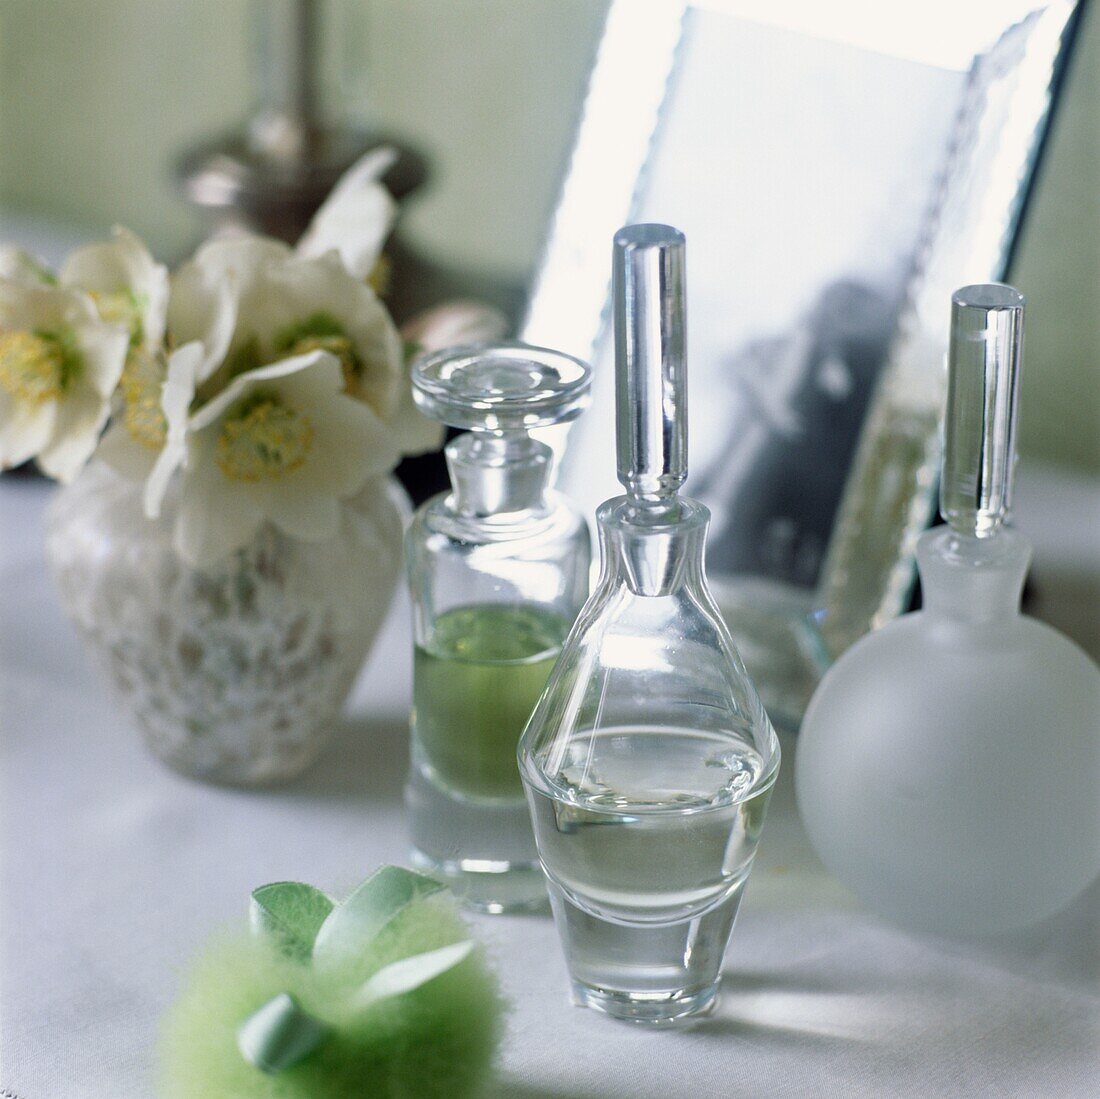 Parfümflaschen und Blumenvase mit Spiegel auf dem Schminktisch